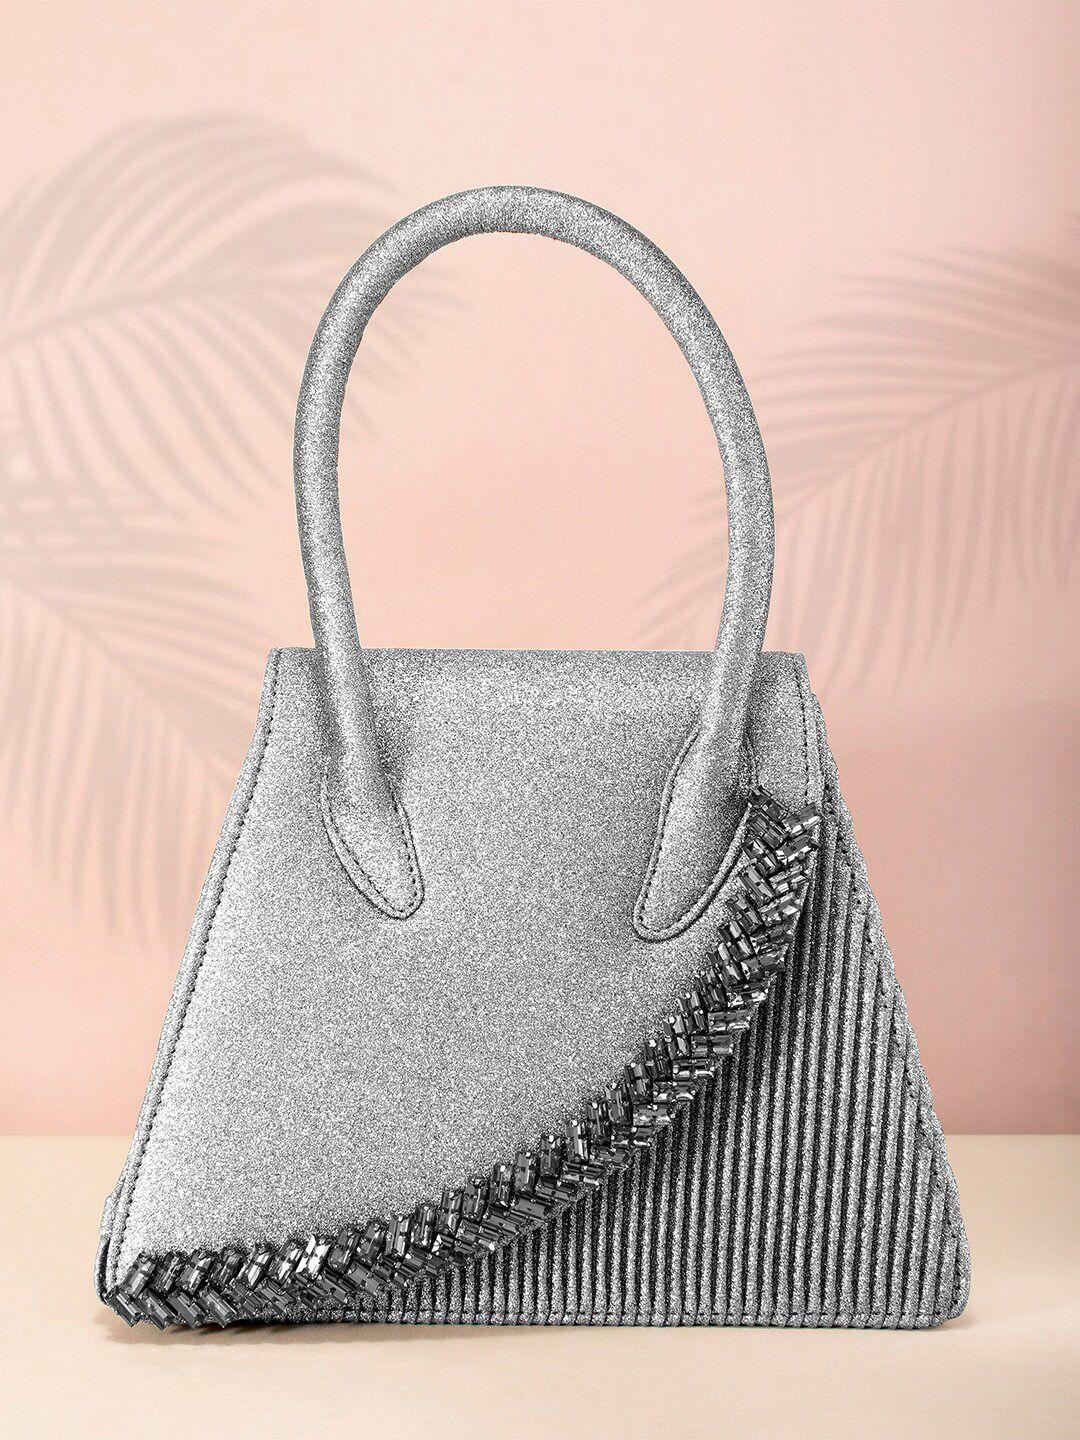 peora grey embellished structured satchel